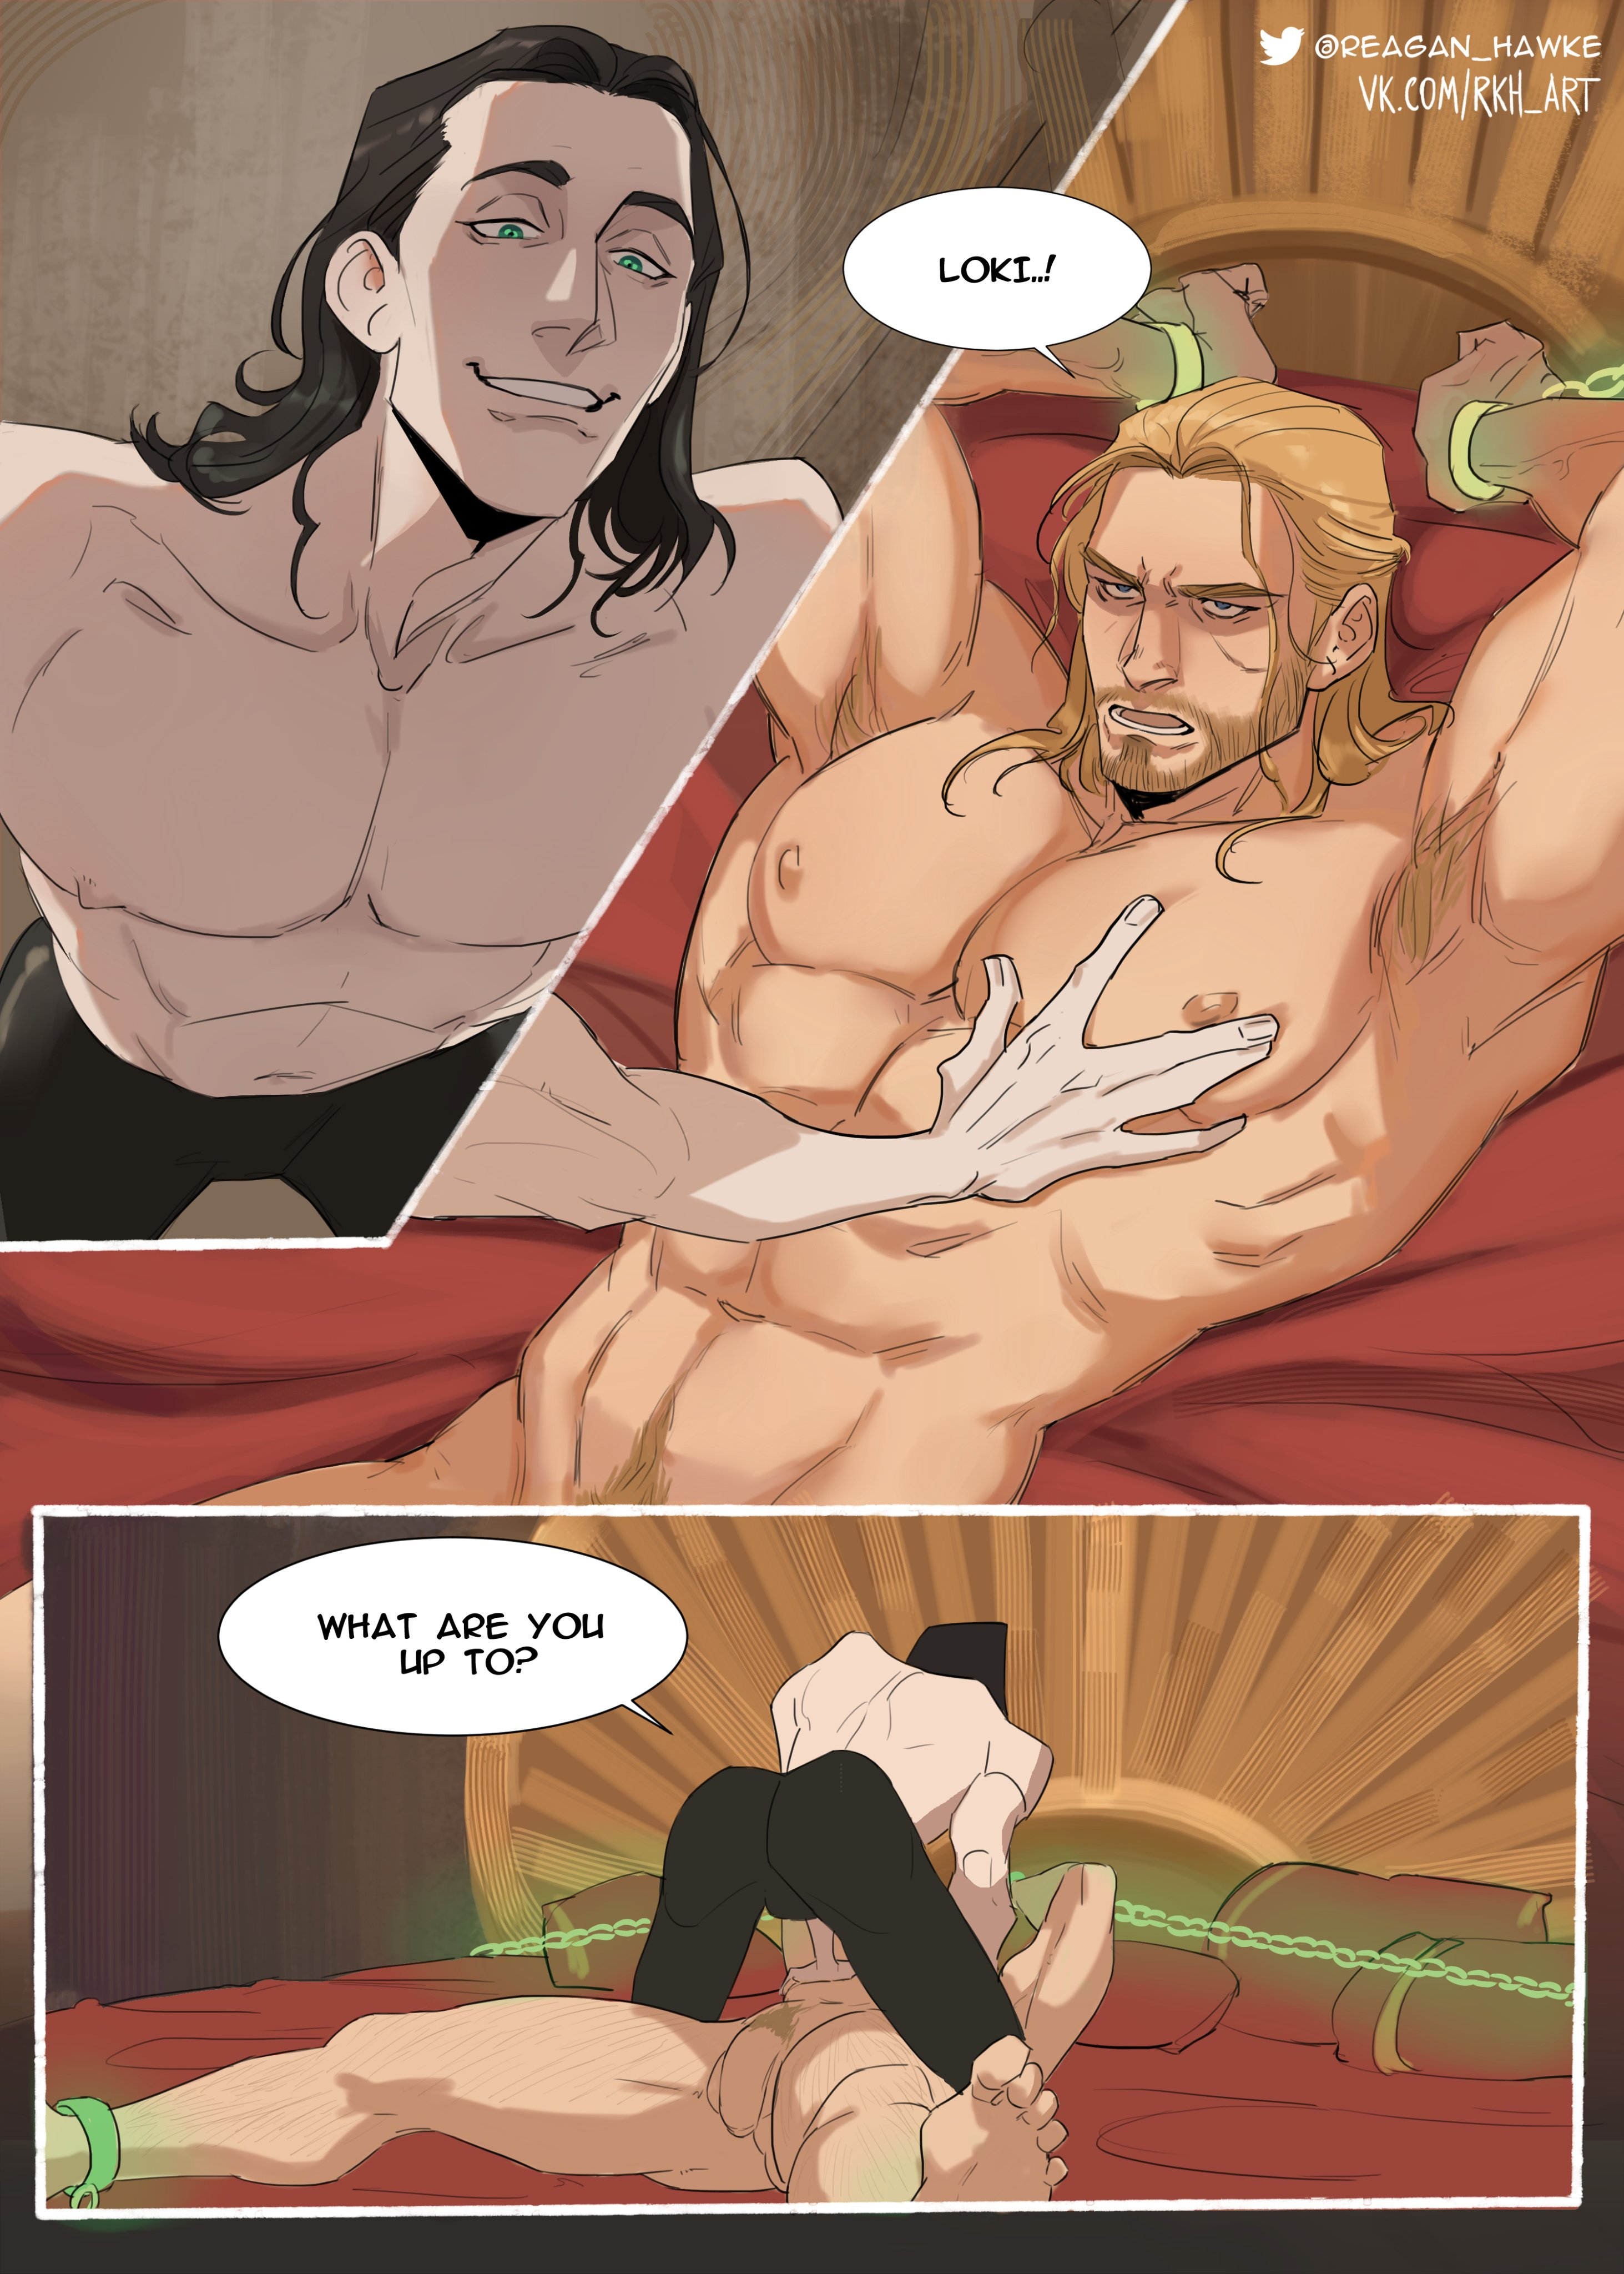 Loki and thor gay porn comic